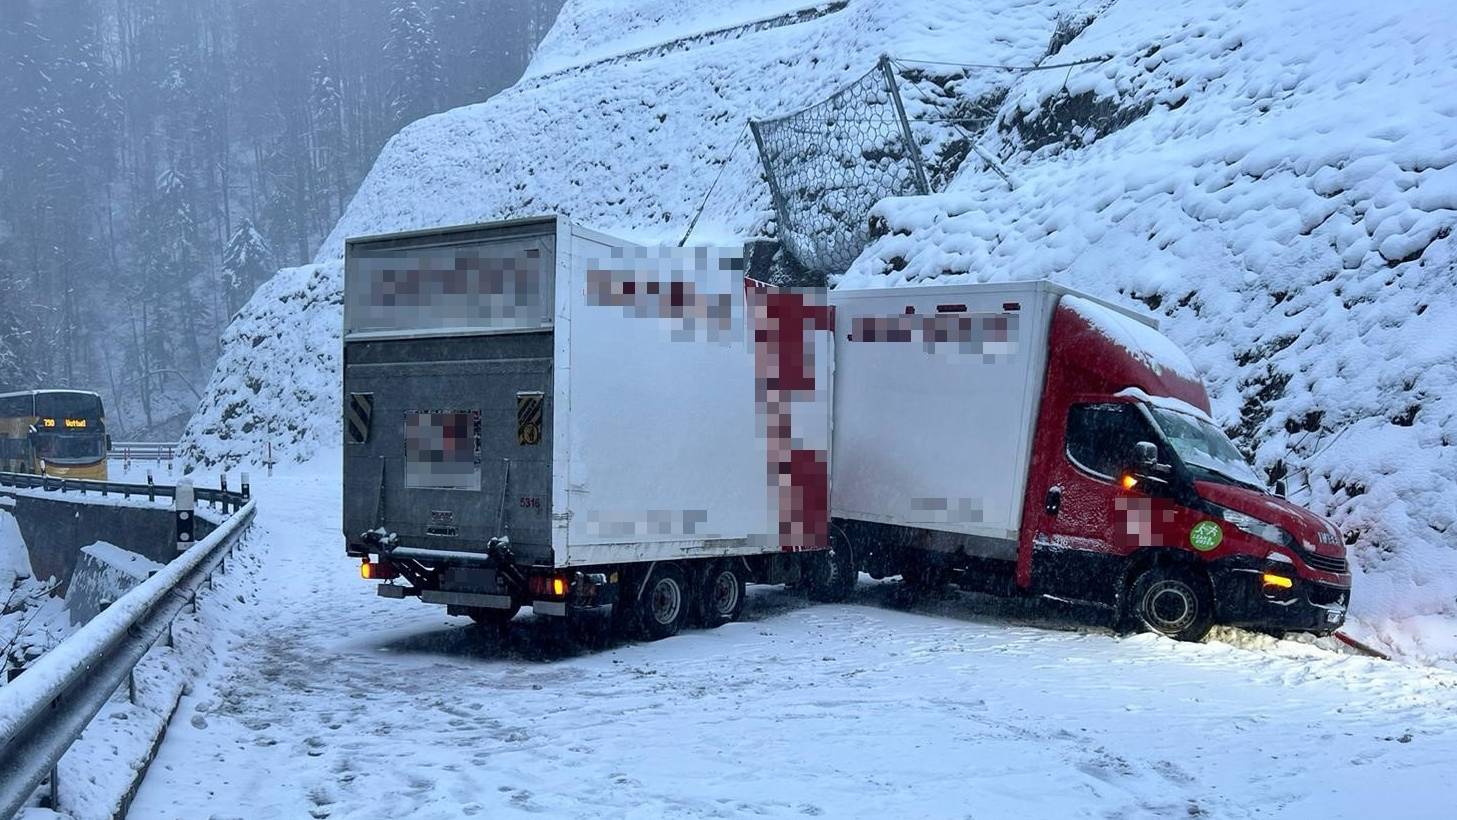 Auf der schneebeckten Strasse hat der Lenker des Lieferwagens samt Anhänger die Kontrolle verloren.